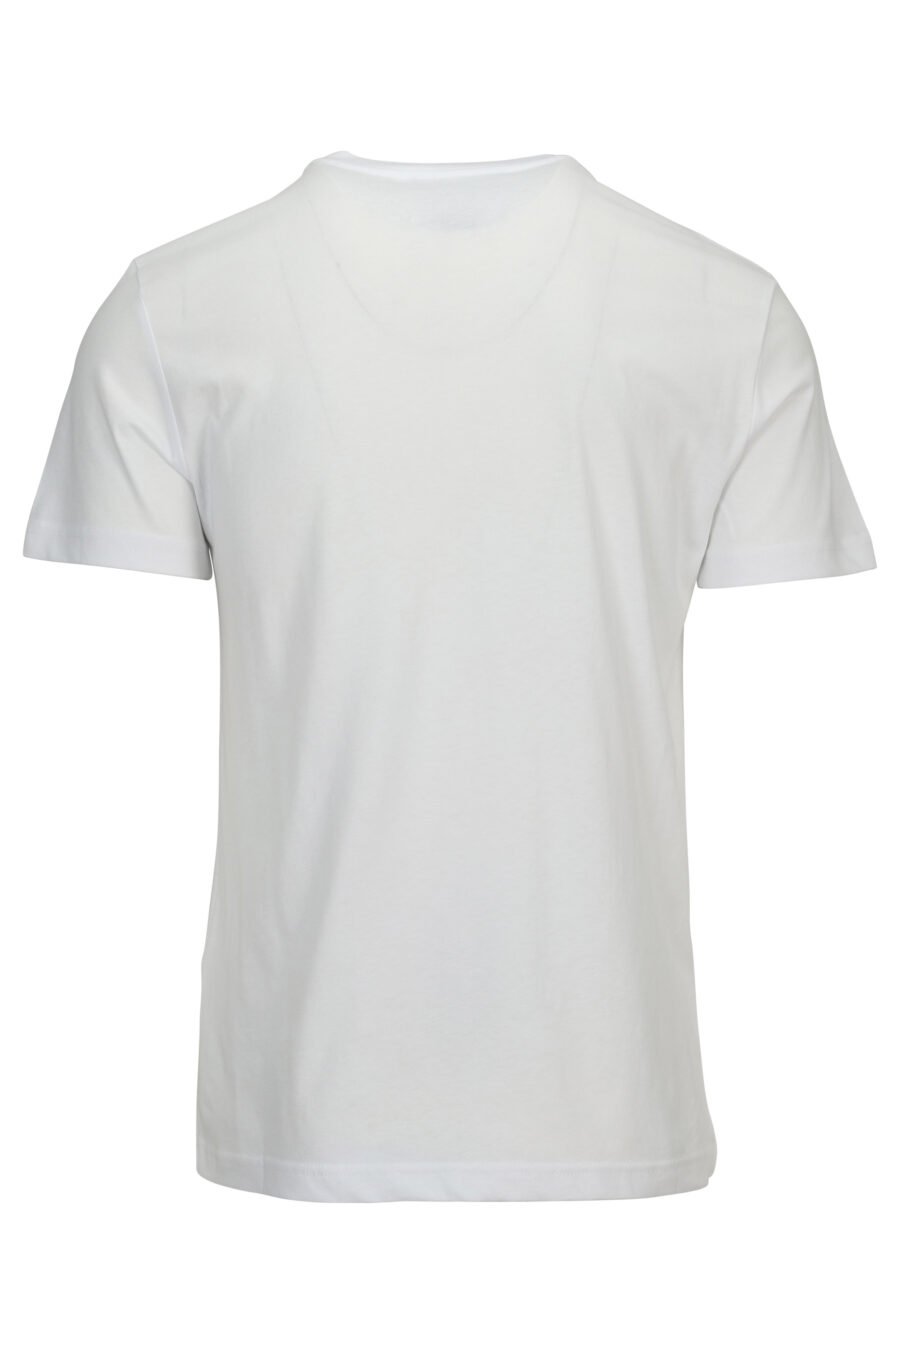 T-shirt branca com maxilogo dourado brilhante - 8052019579987 1